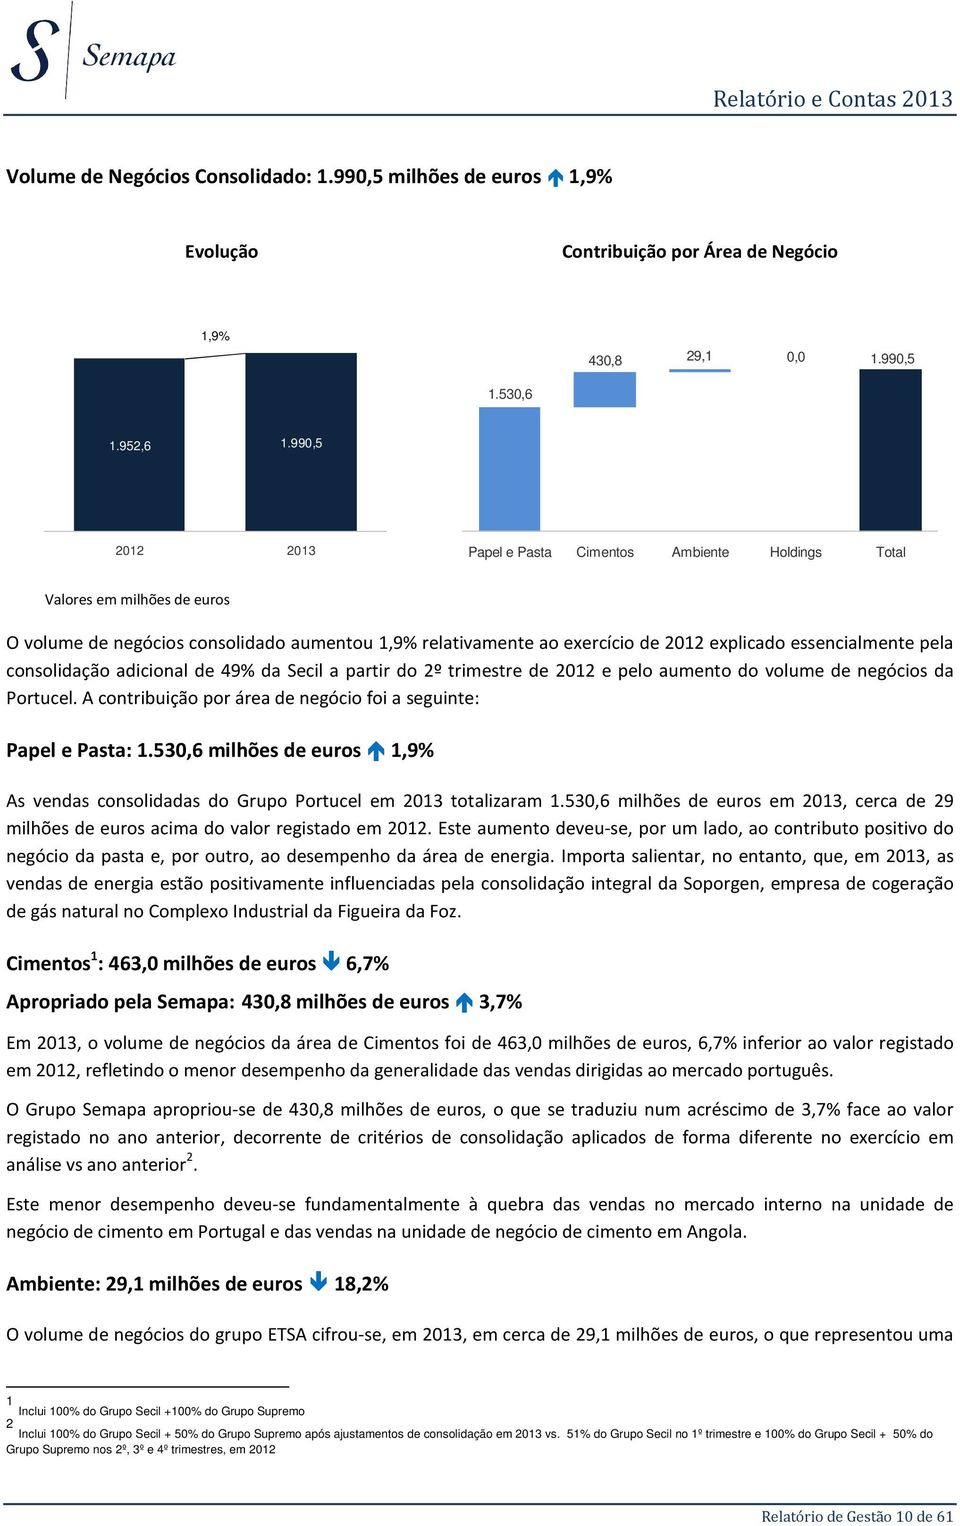 pela consolidação adicional de 49% da Secil a partir do 2º trimestre de 2012 e pelo aumento do volume de negócios da Portucel. A contribuição por área de negócio foi a seguinte: Papel e Pasta: 1.